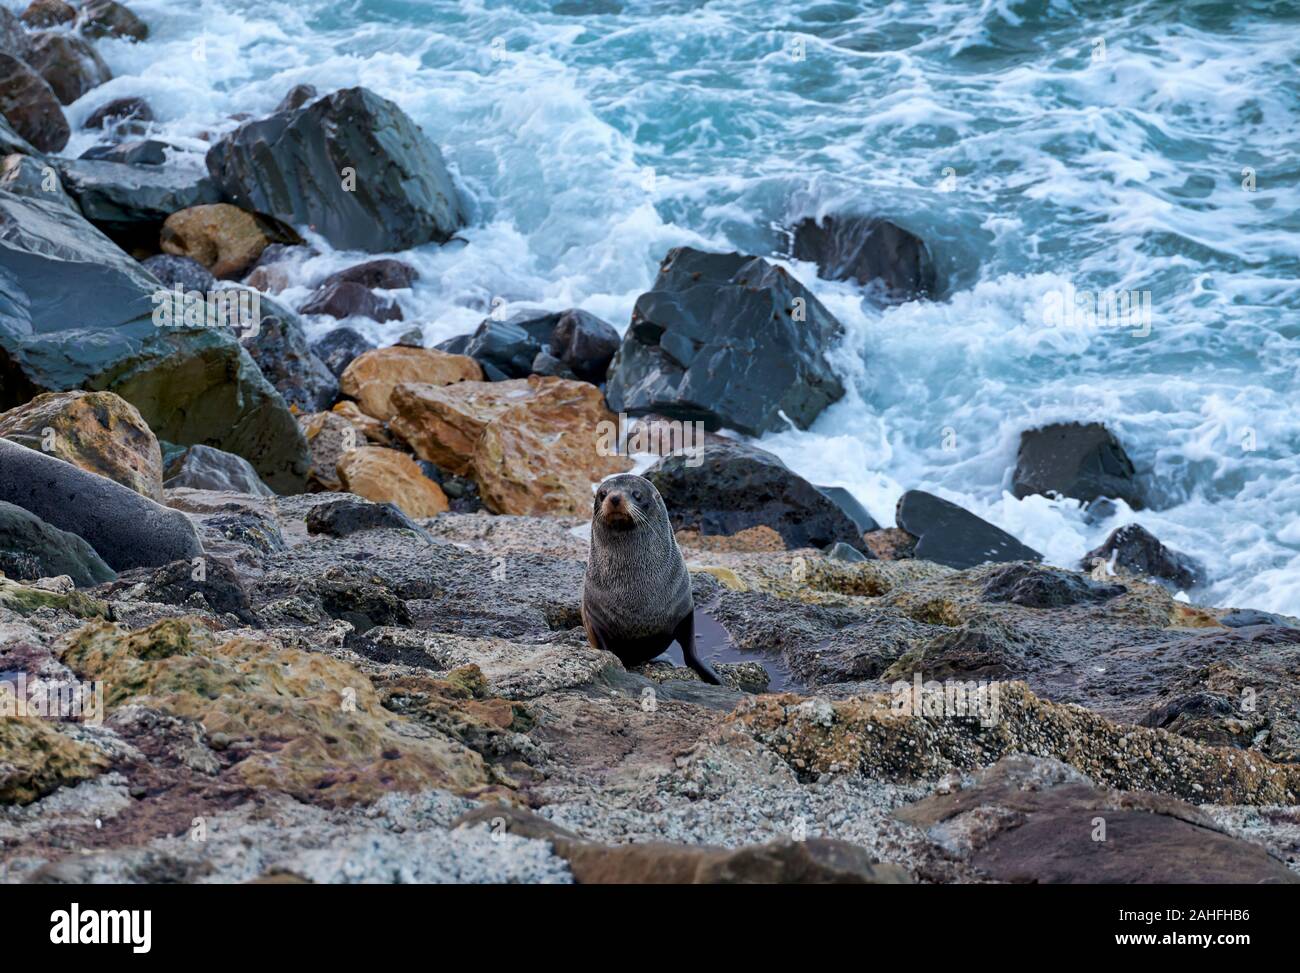 Seal at Oamaru Penguin Colony Sanctuary. New Zealand Stock Photo